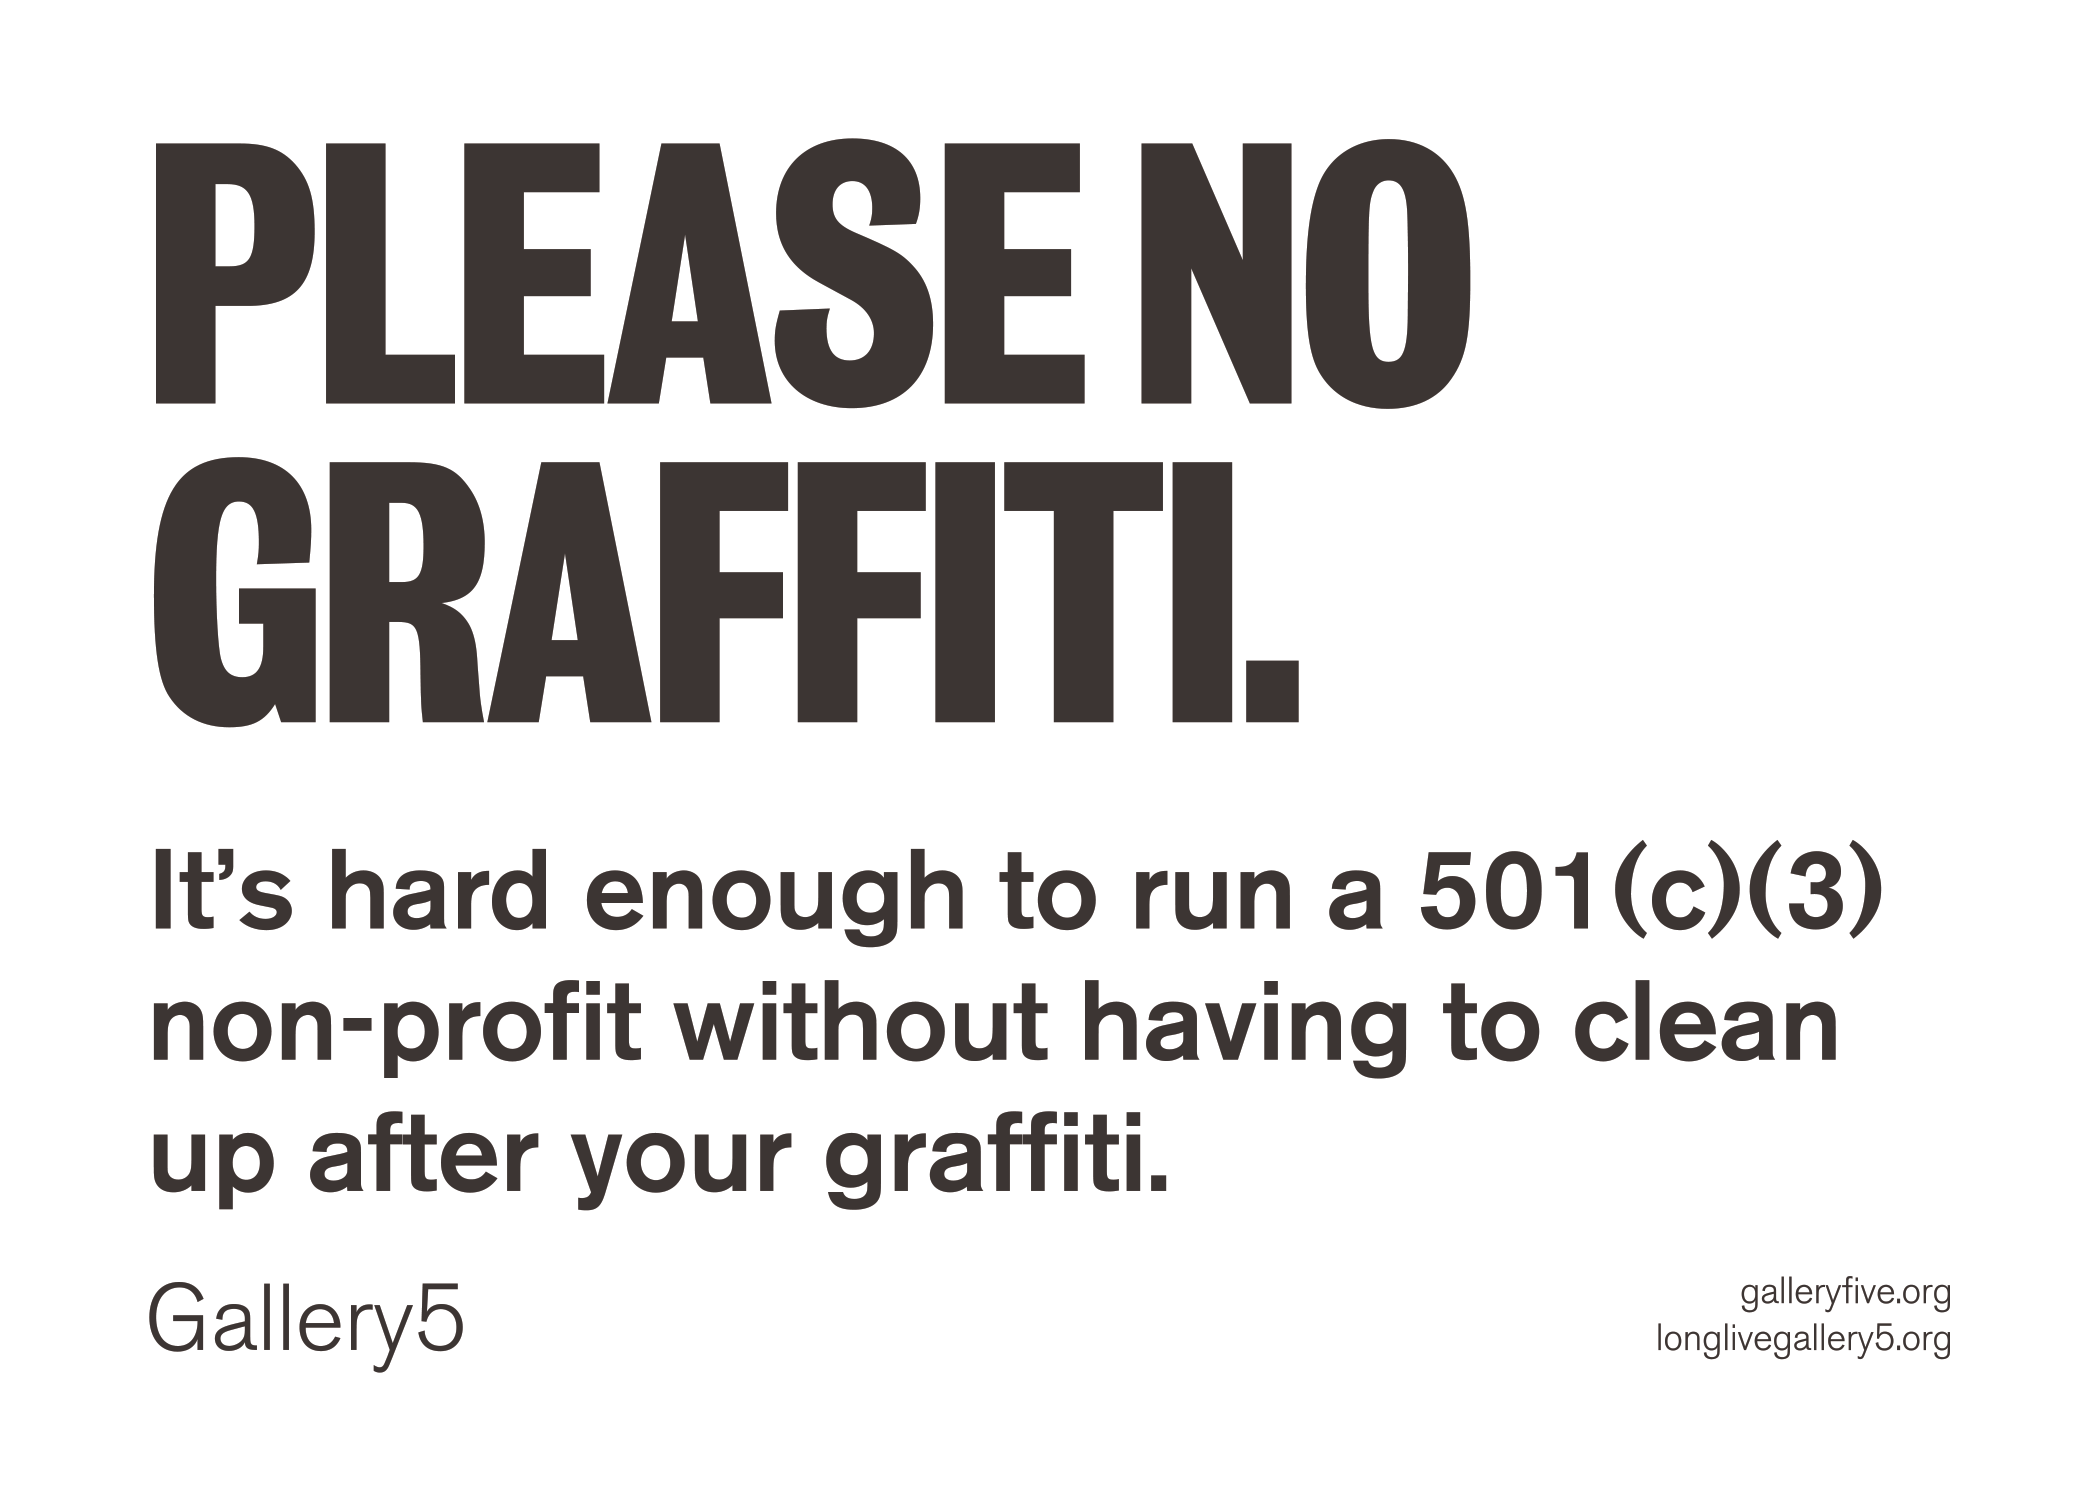 Please no graffiti signage